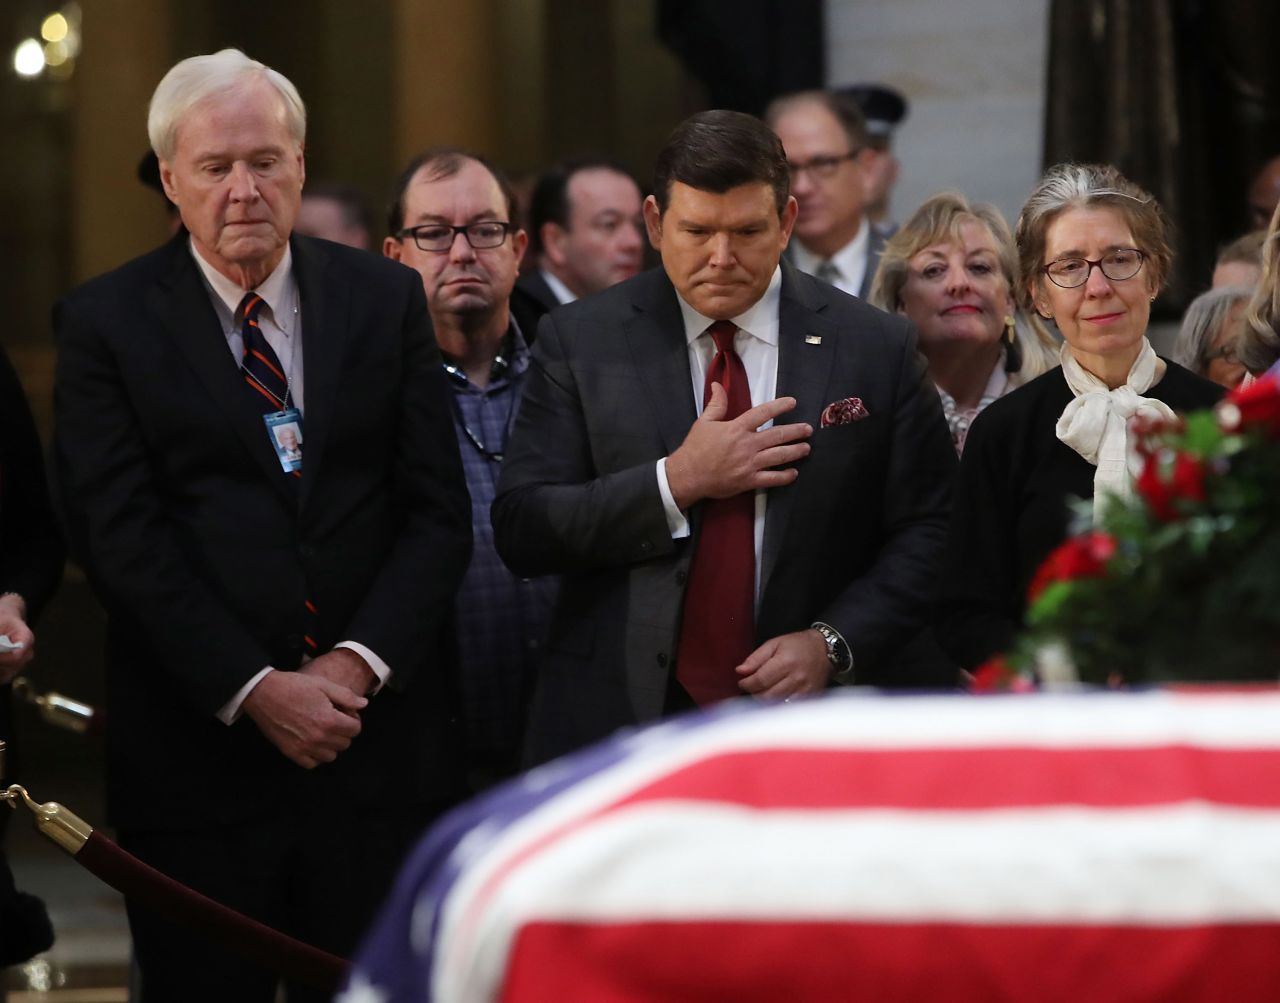 MSNBC television anchor Chris Matthews, left, and Fox News anchor Bret Baier visit Bush's casket.